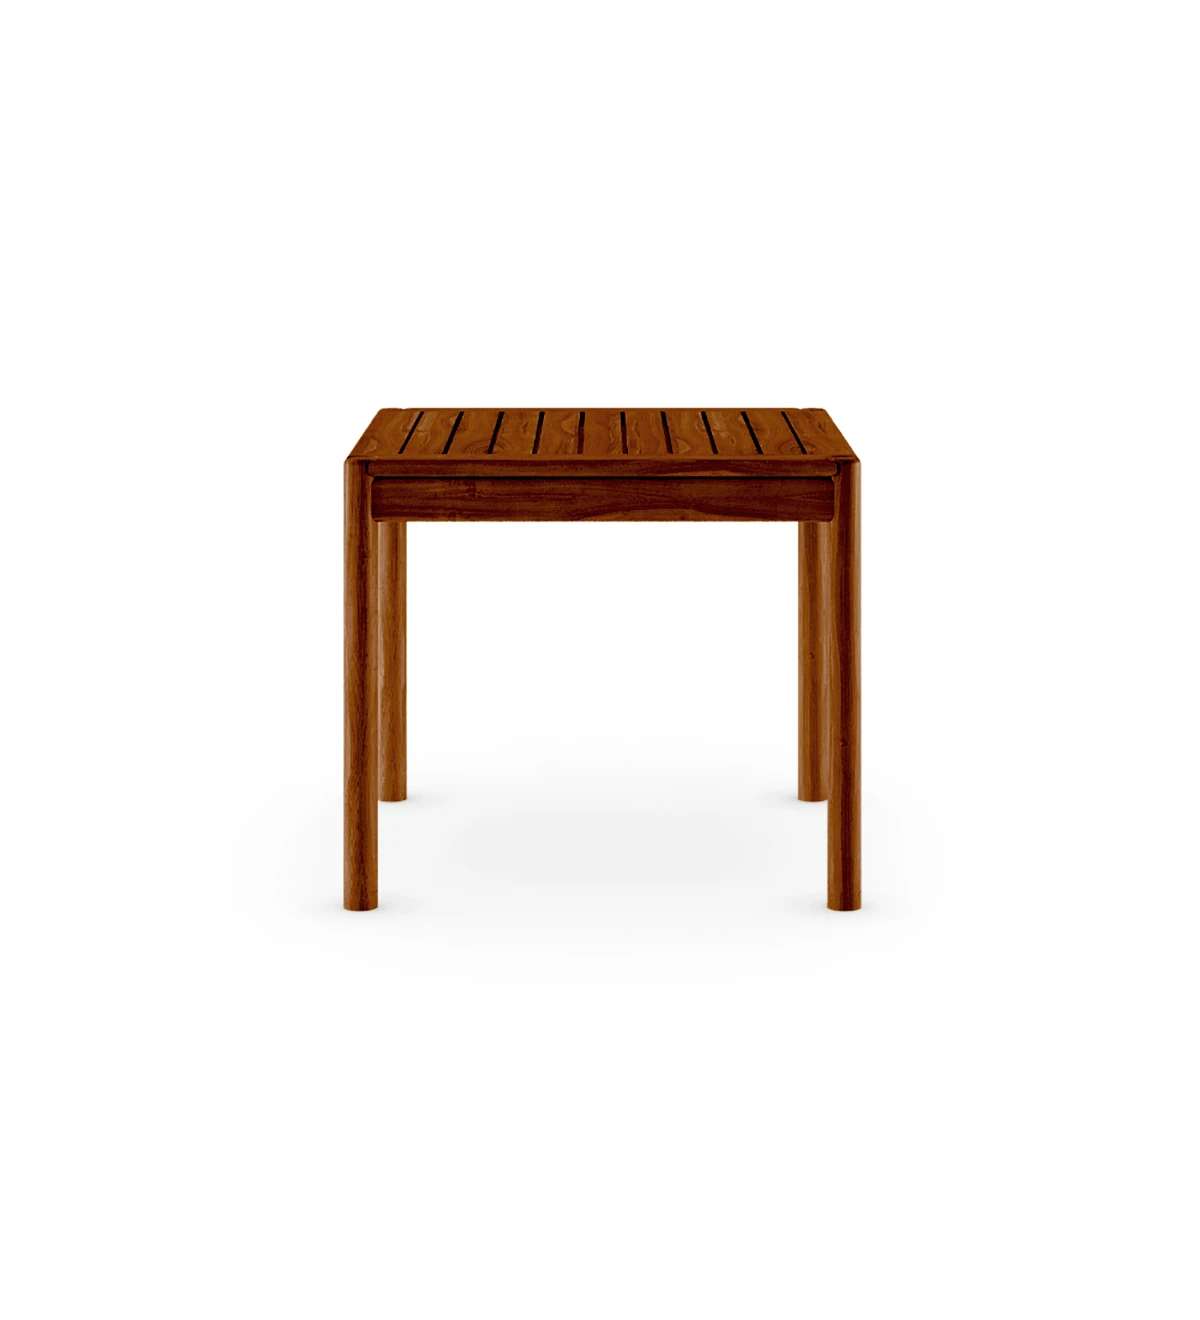 Mesa de comedor cuadrada en madera natural color miel.